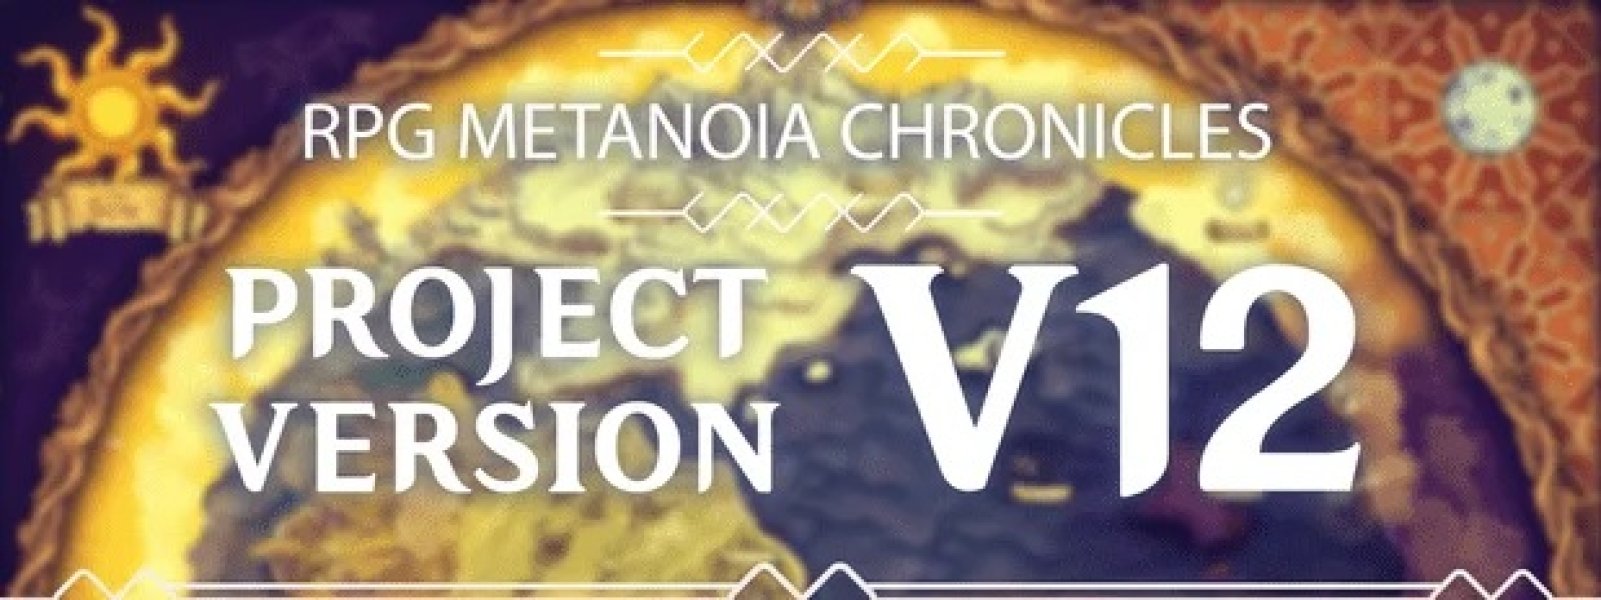 RPG Metanoia Chronicles